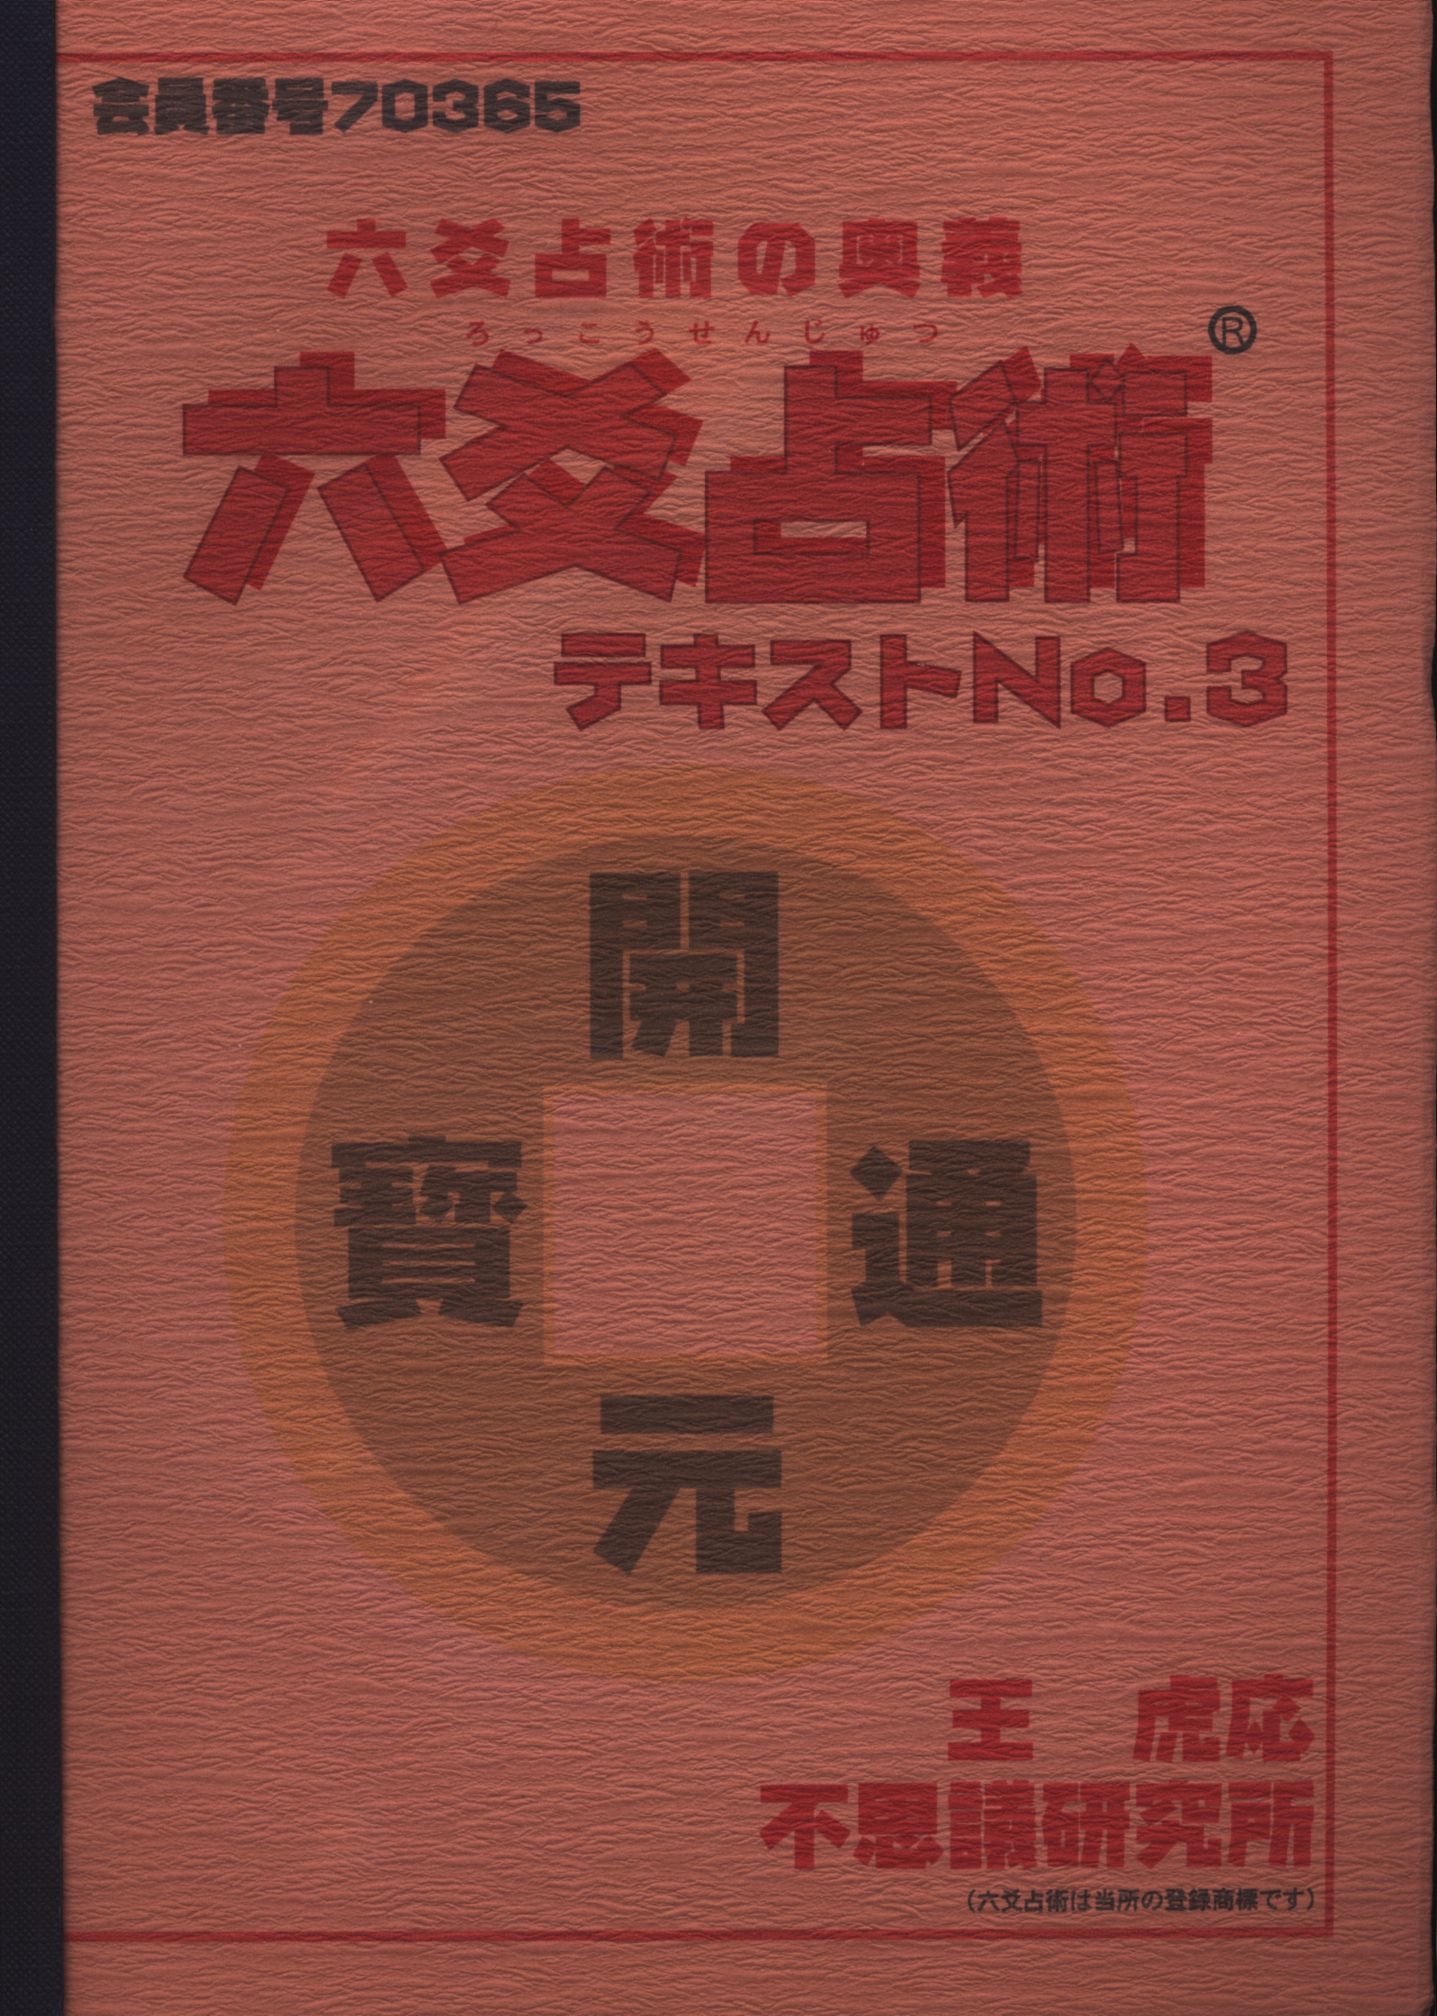 不思議研究所 森田健 六爻占術テキスト1.2 資料 書籍 中国コイン - 本